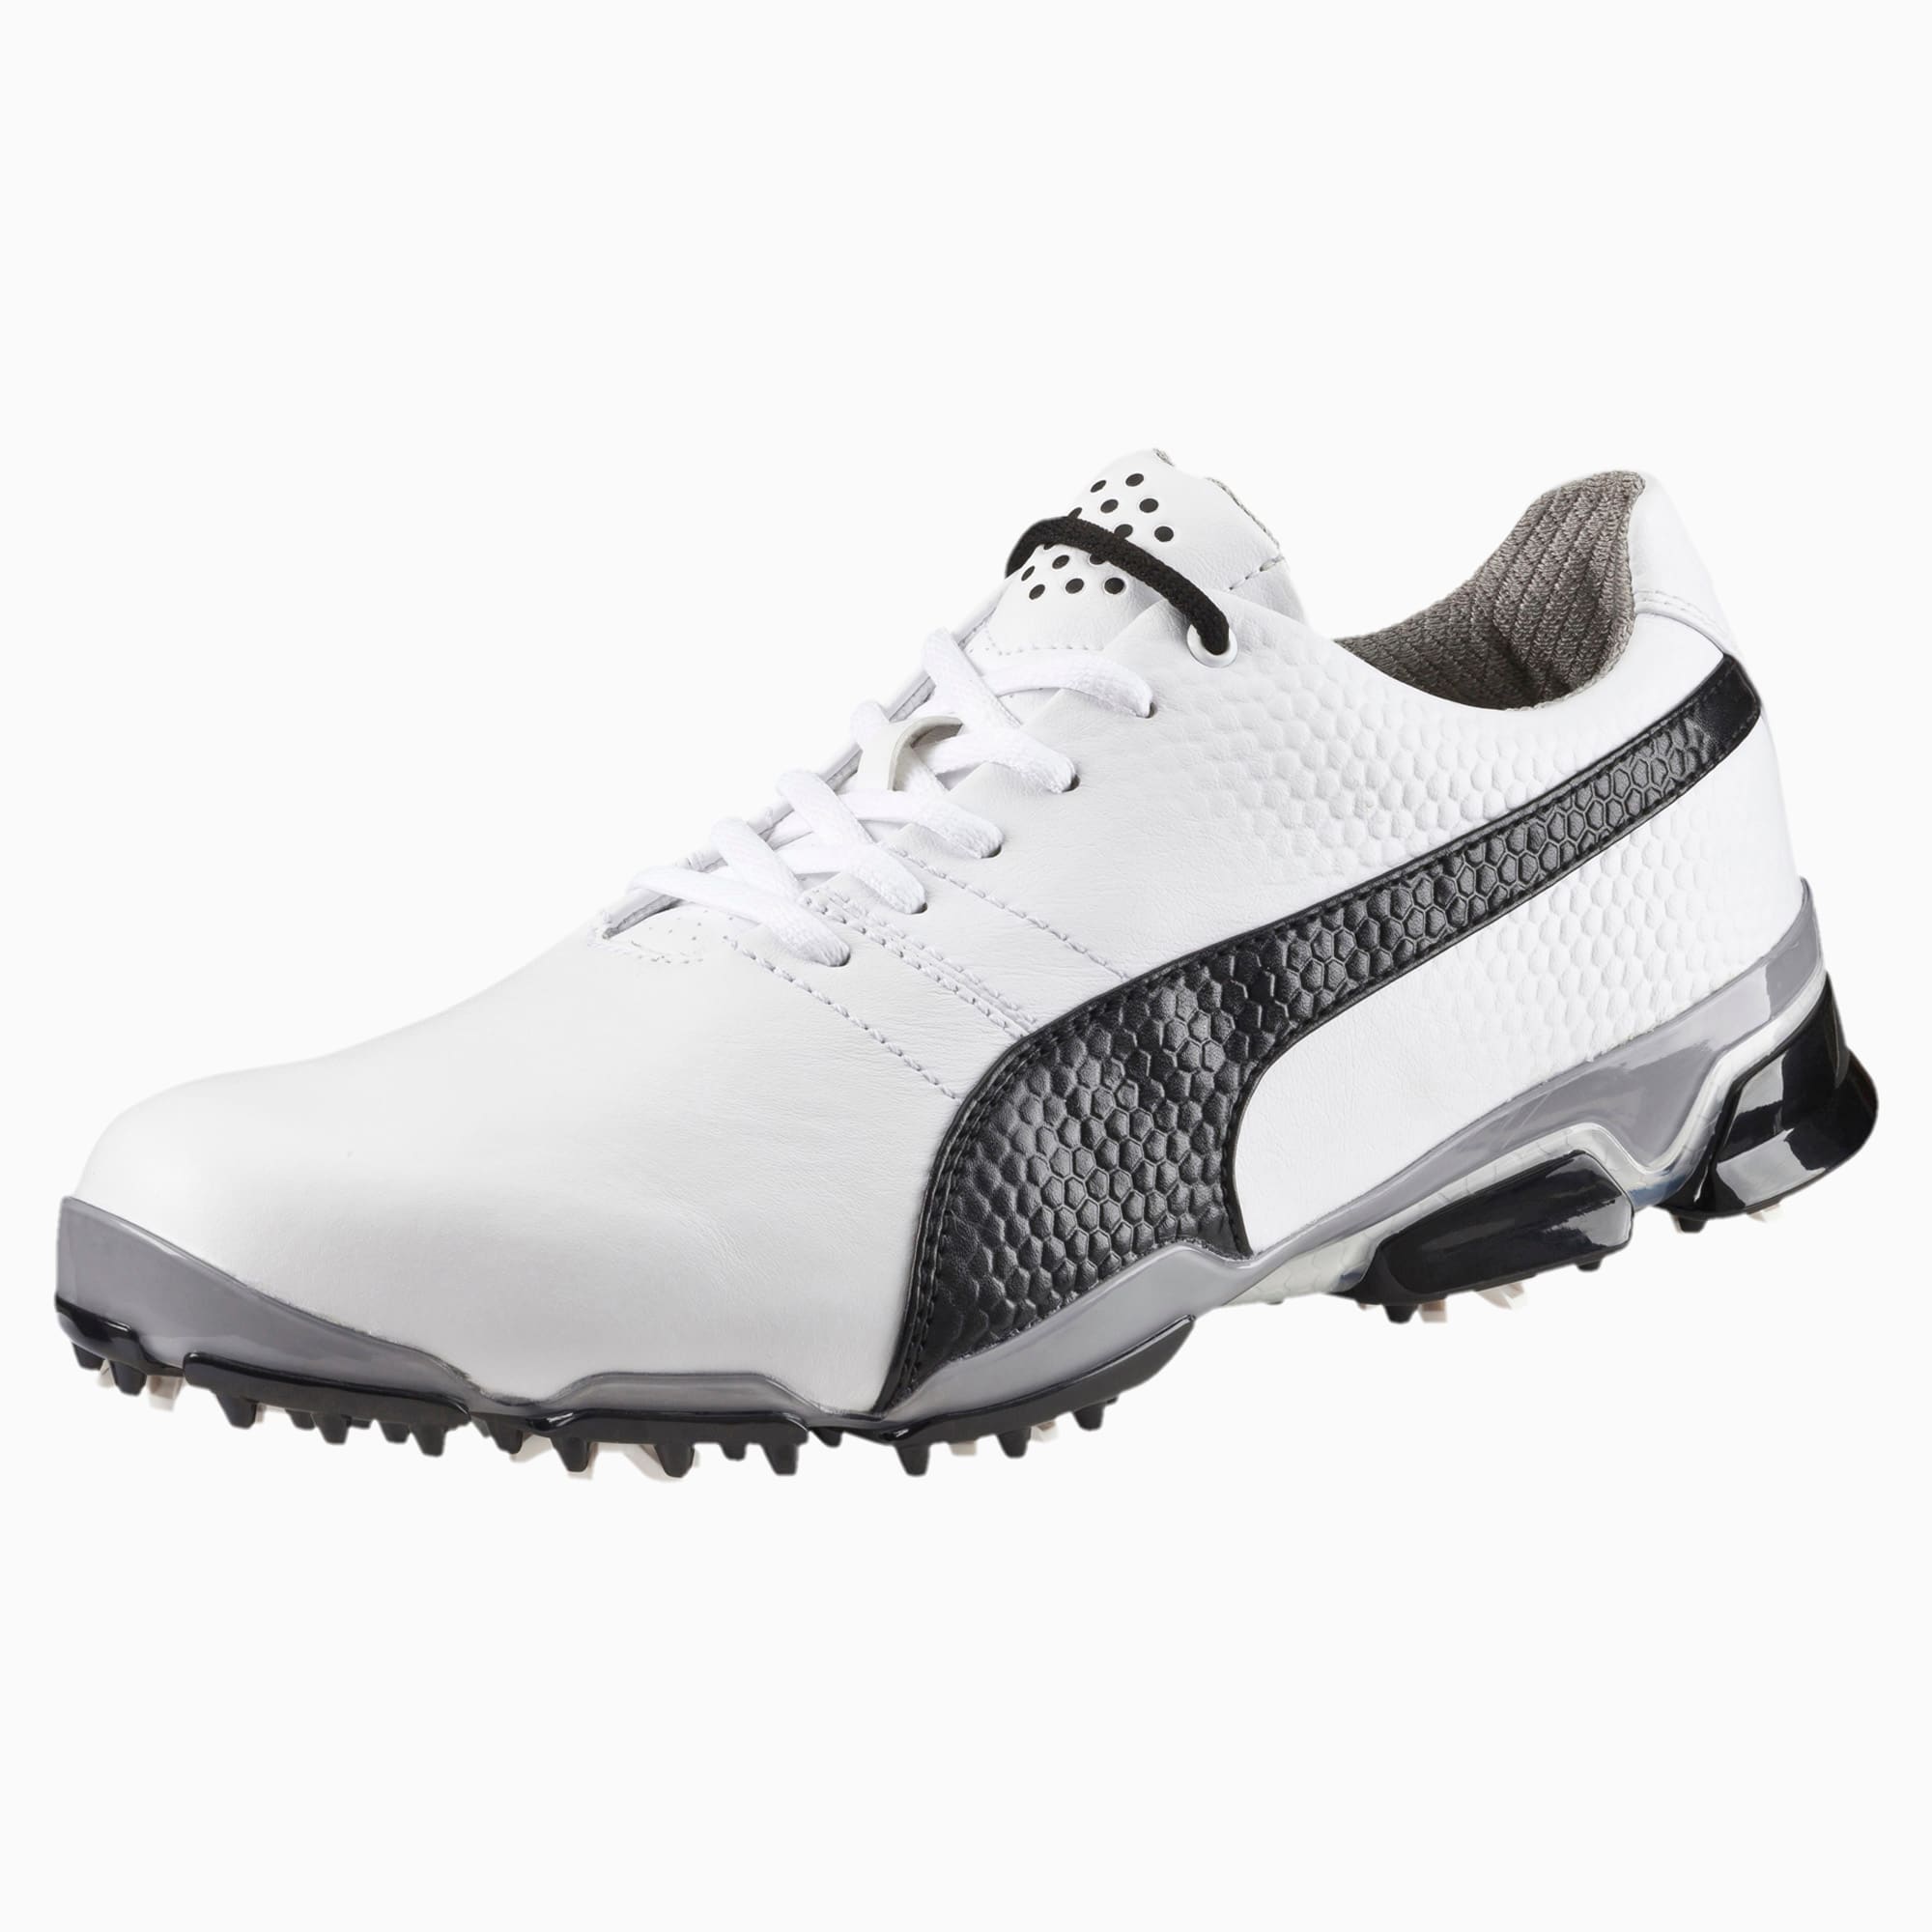 puma titantour golf shoes